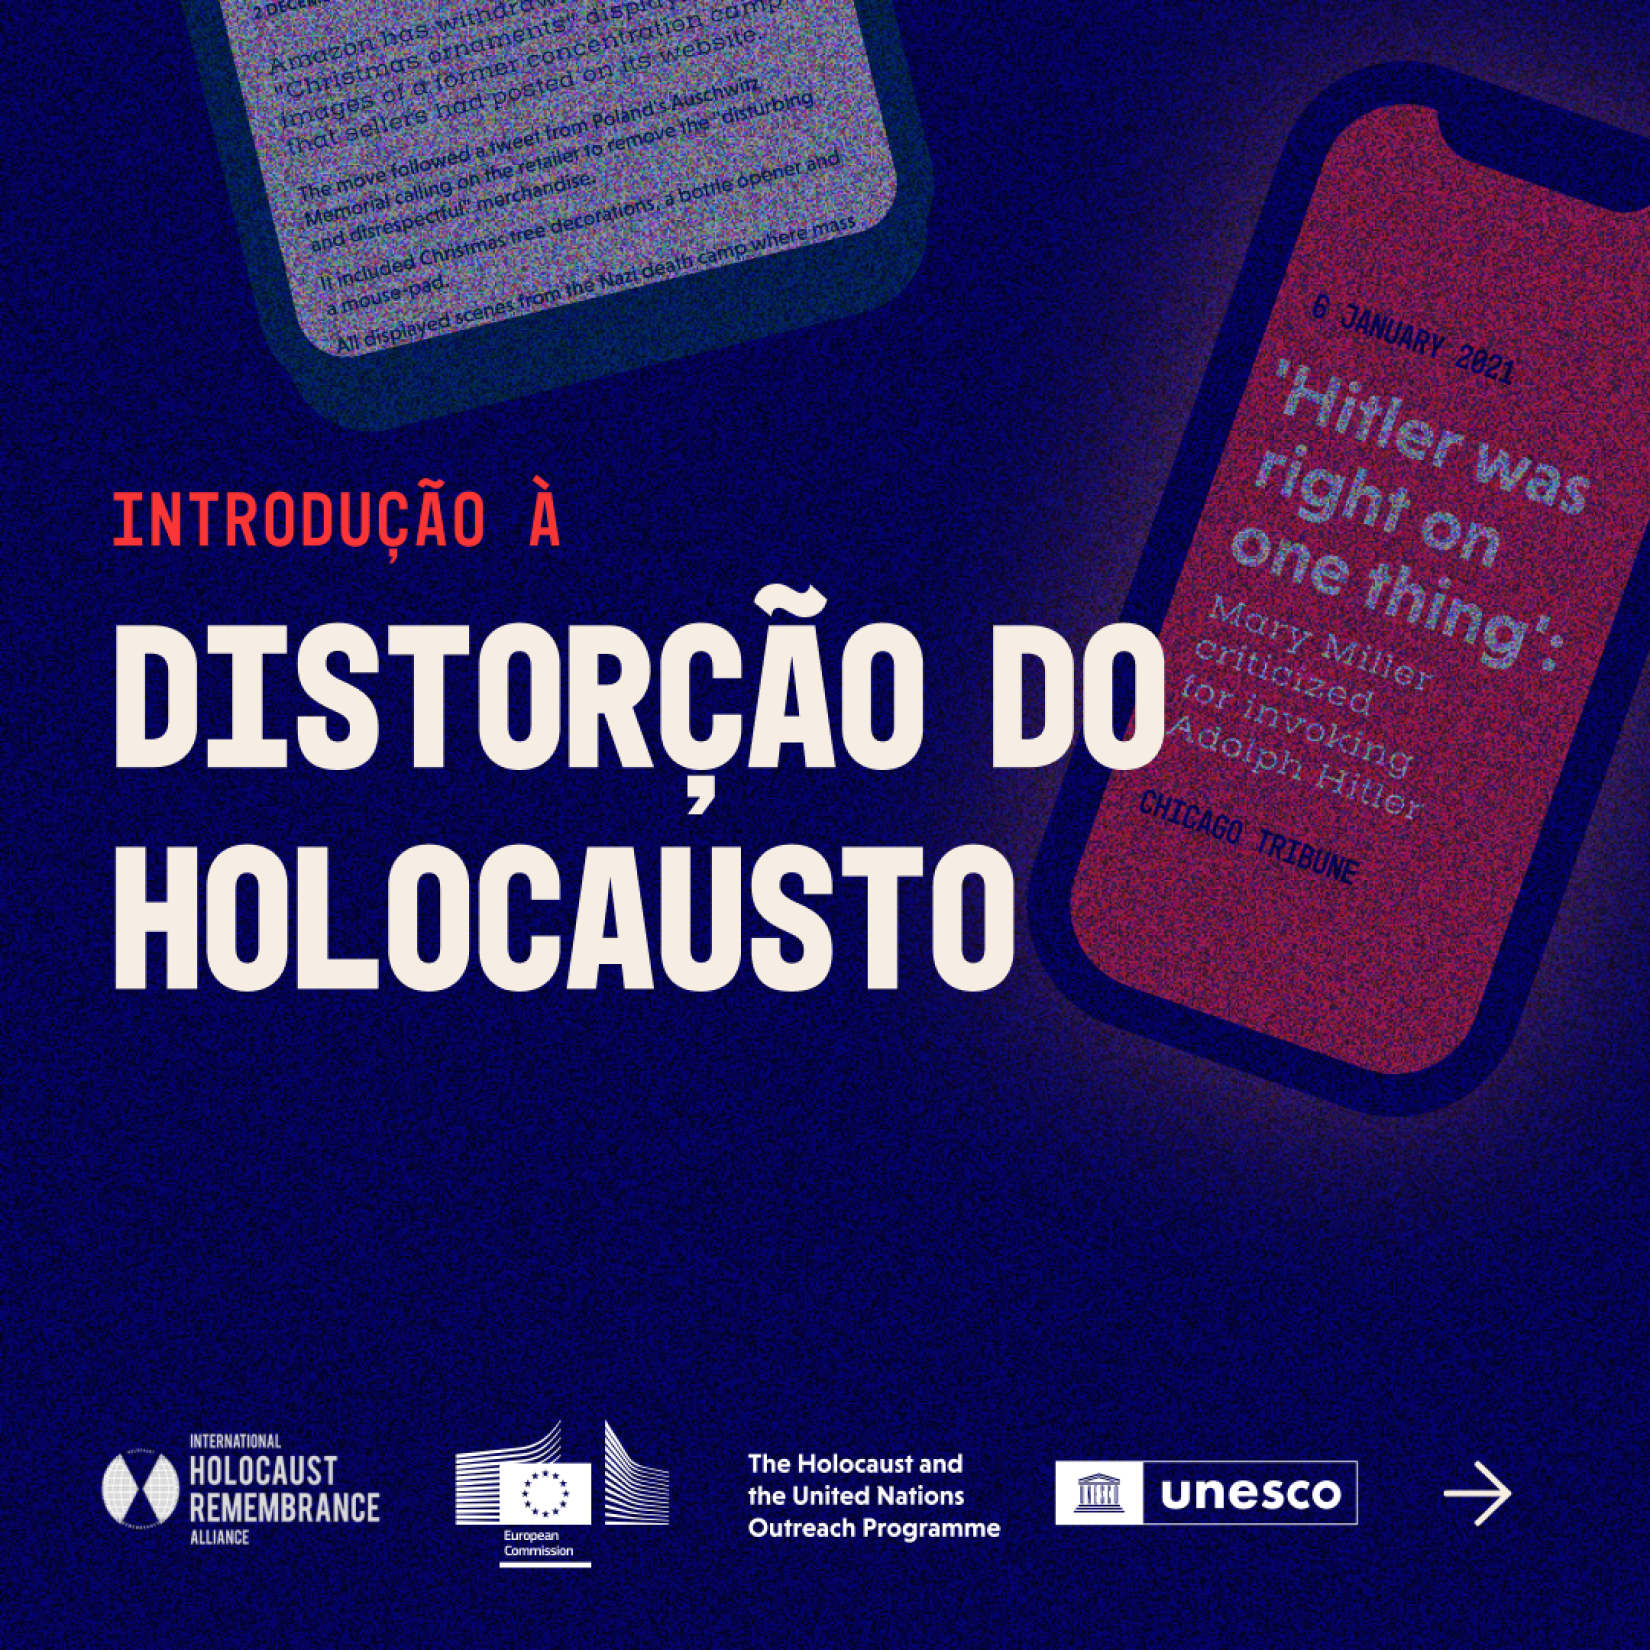 #ProtejaOsFatos: Una-se à campanha global contra a distorção e negação do Holocausto. 